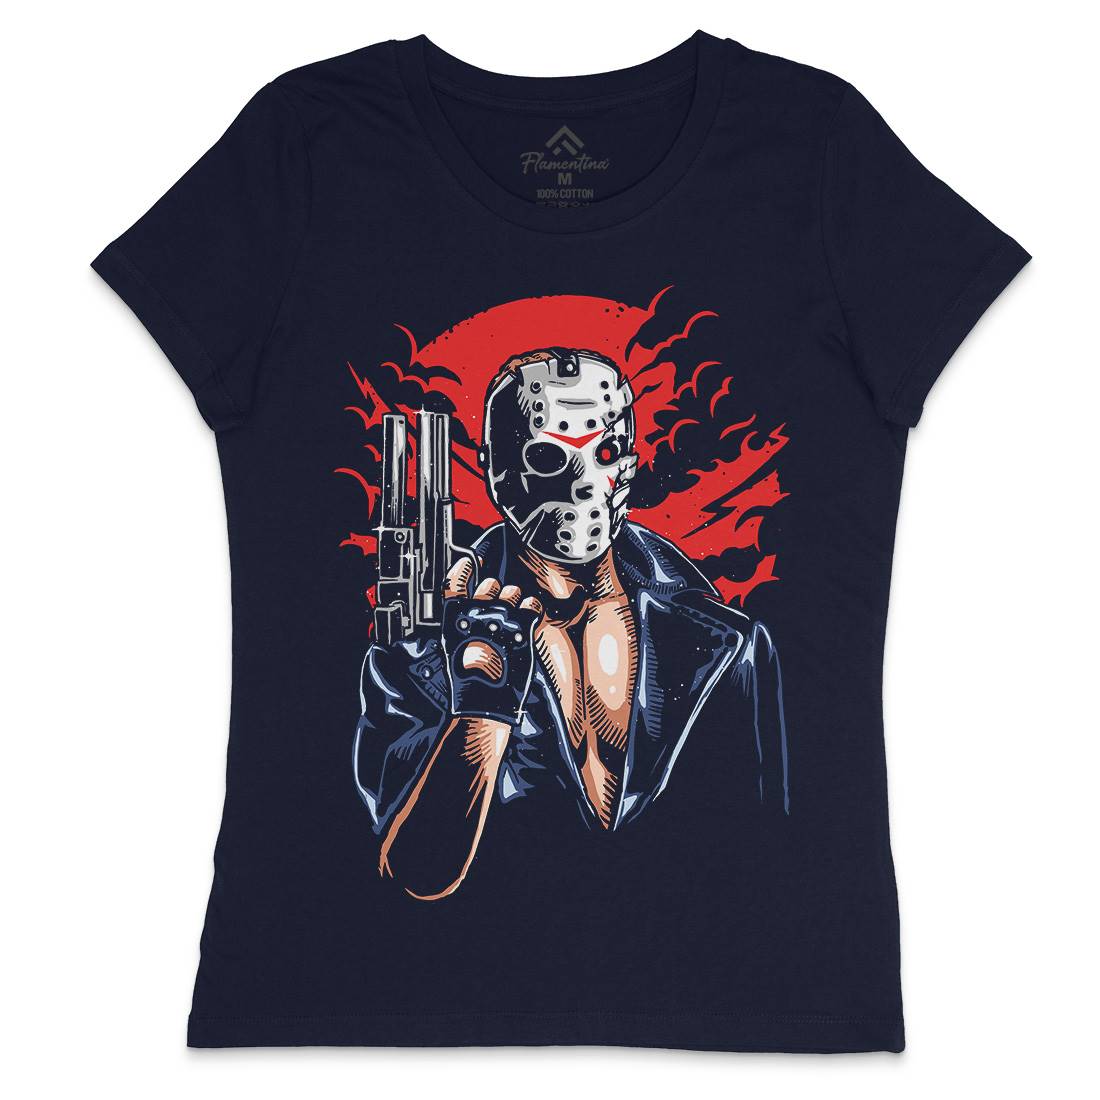 Jason Womens Crew Neck T-Shirt Horror A548